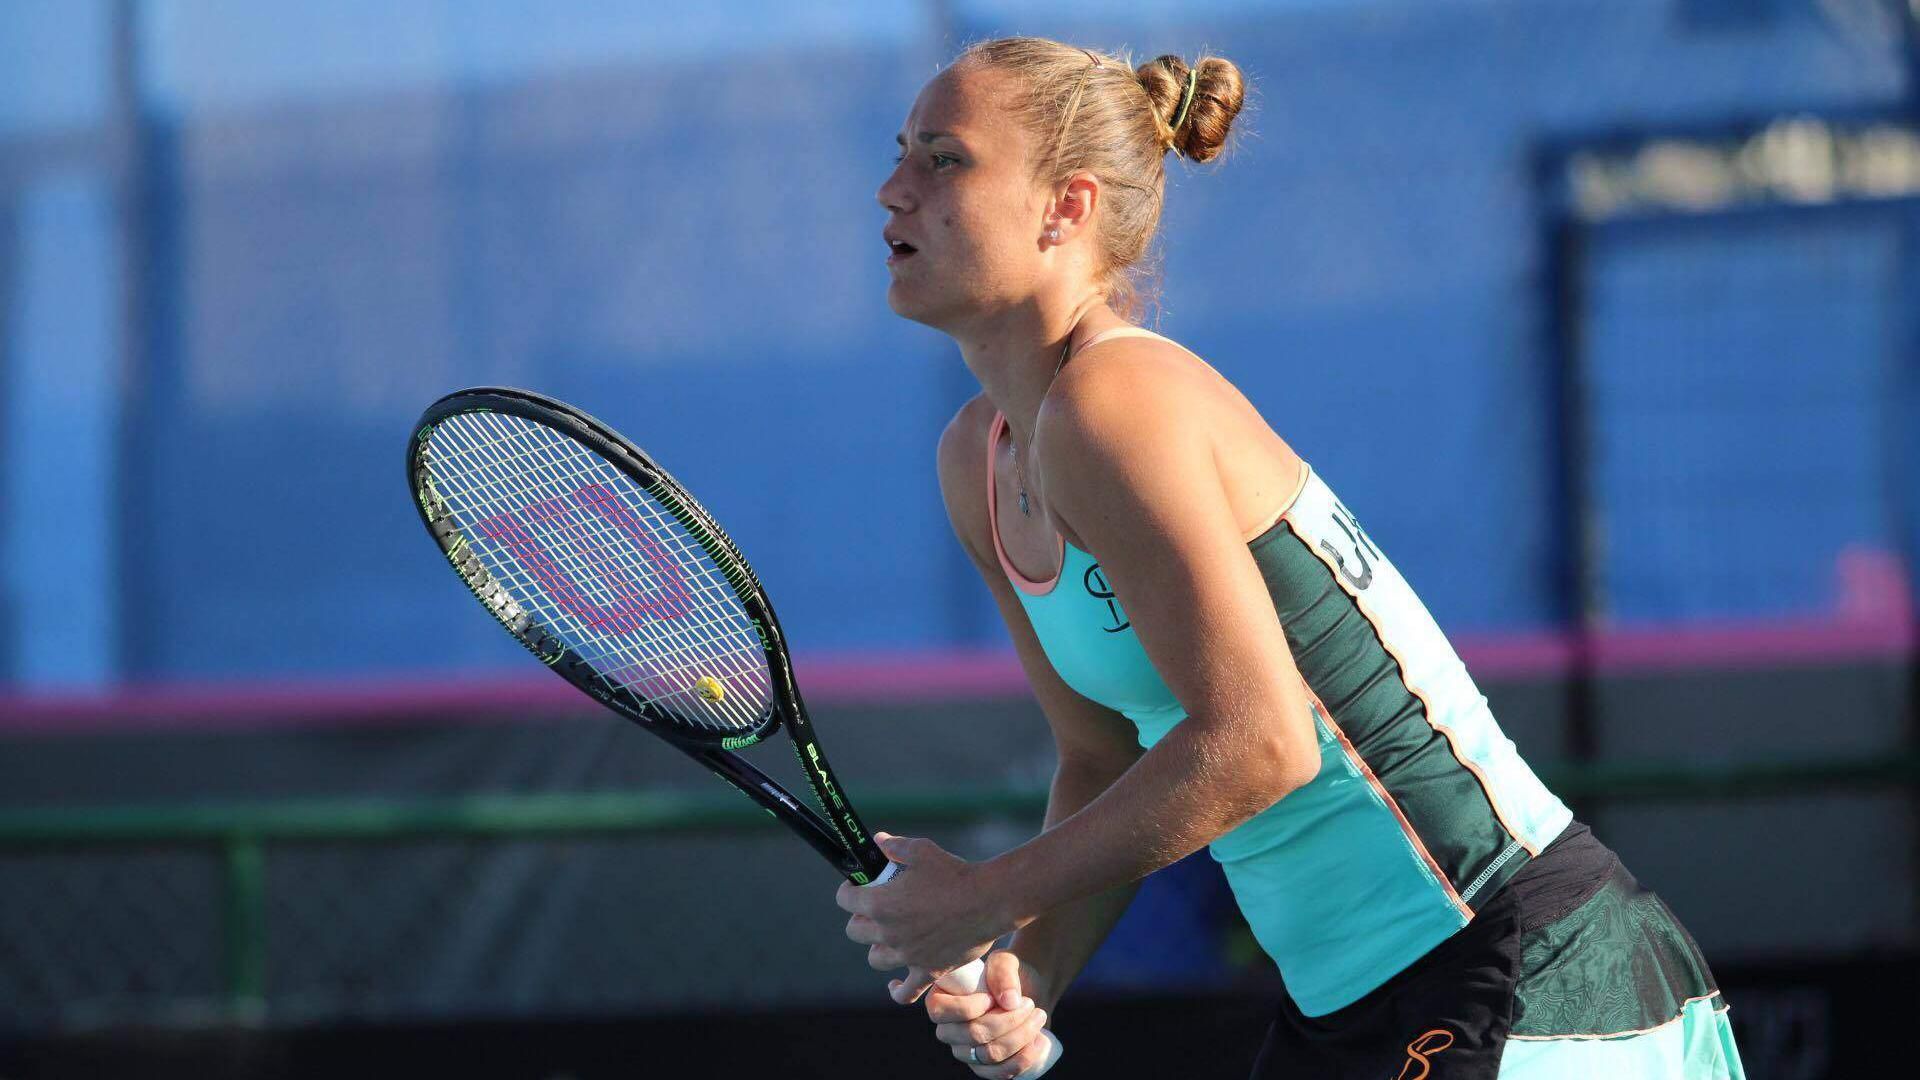 Звездная украинская теннисистка возвращается на корт после паузы в карьере